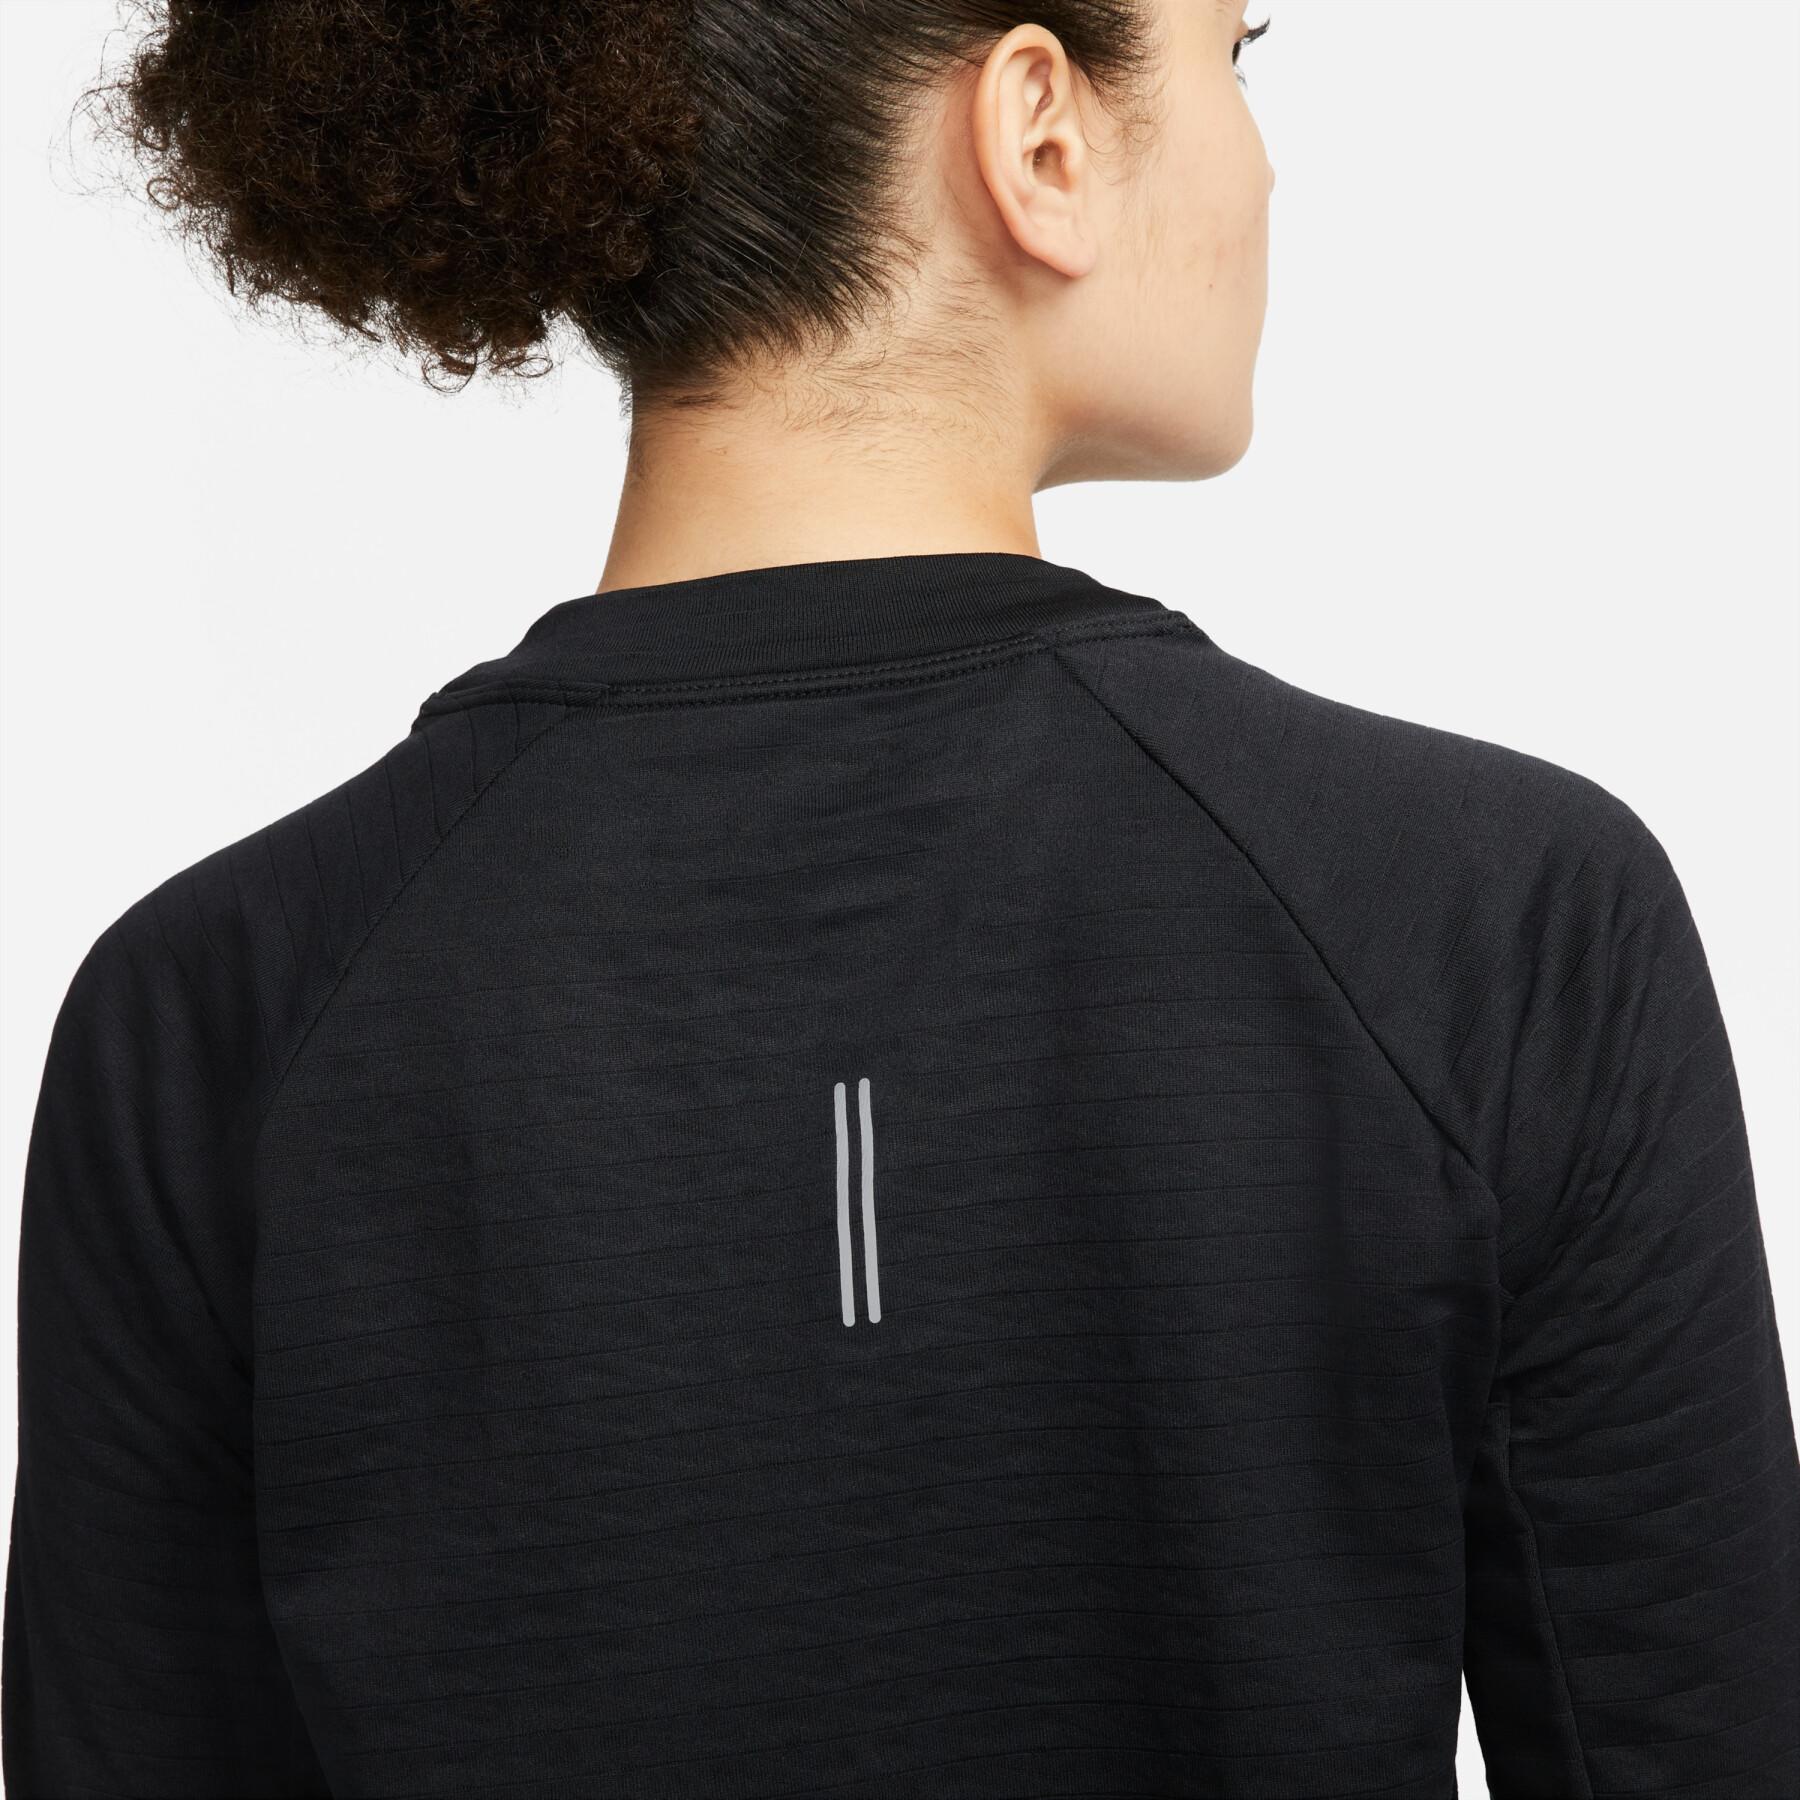 Damska koszulka z długim rękawem Nike Therma-FIT Element Crew